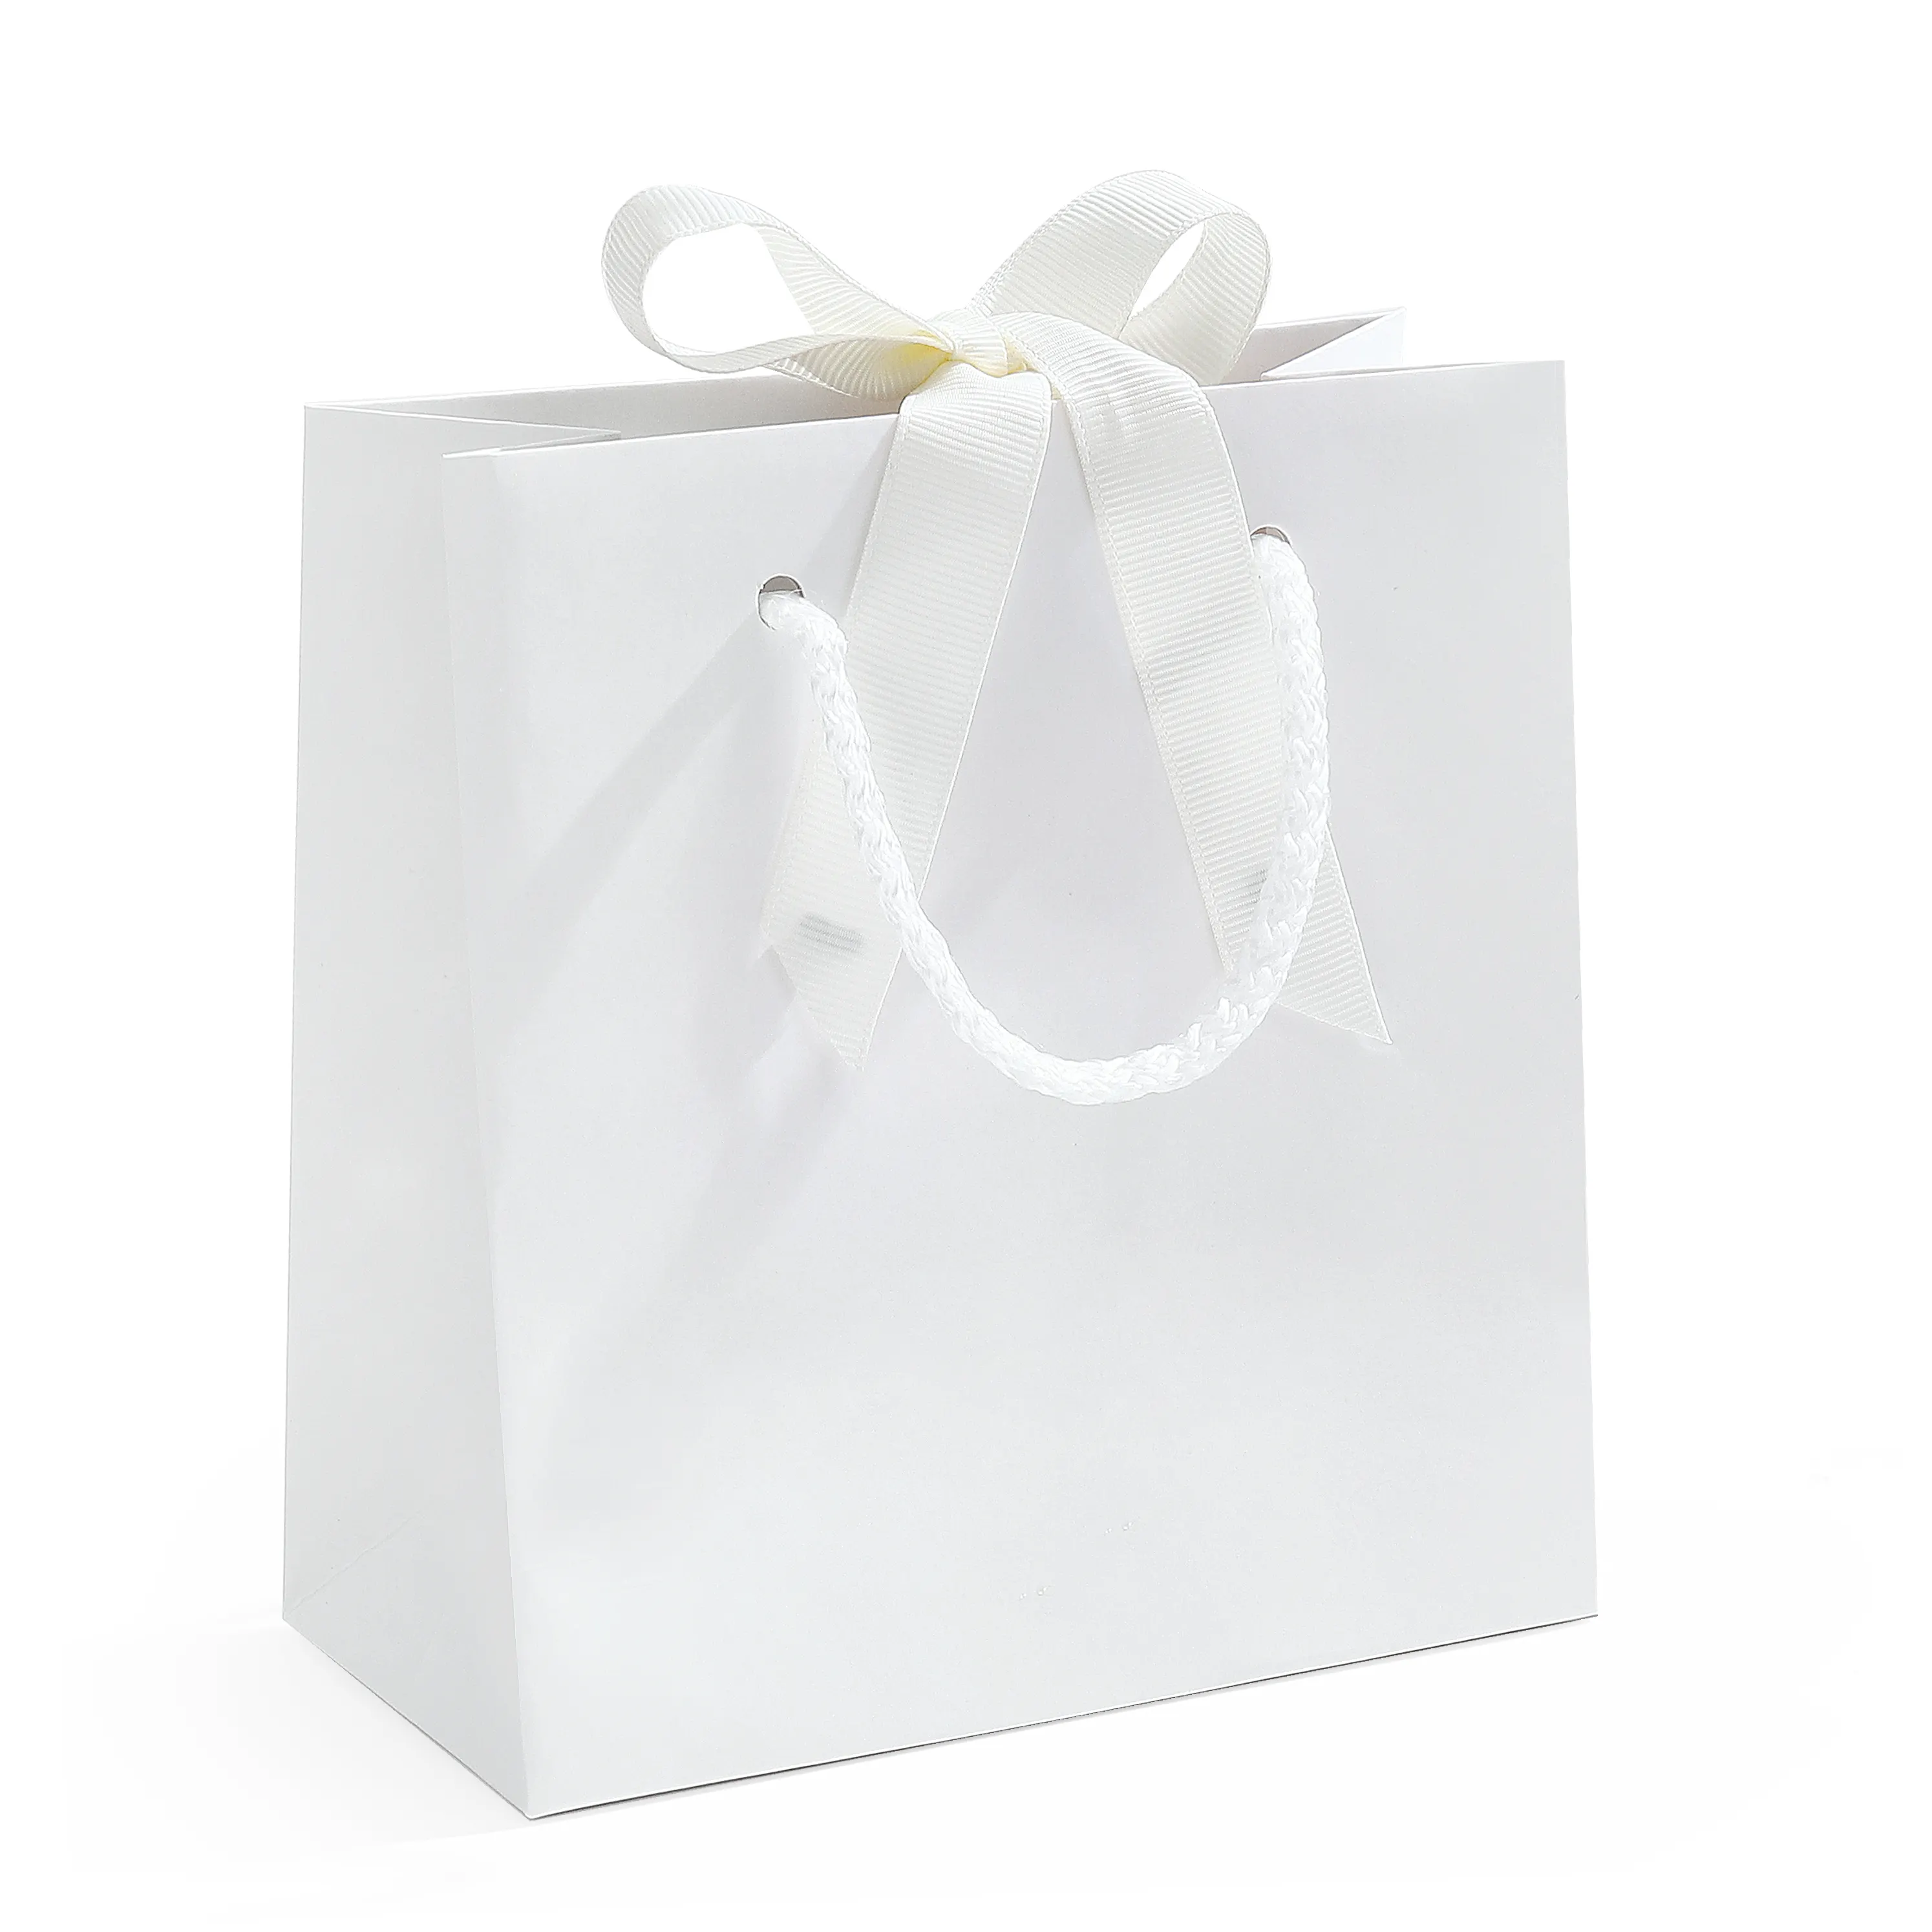 Spot Umweltschutz Papiertüten wieder verwendbare leere Handtaschen weiß gebundene Geschenk verpackung Großhandel Einkaufs papiertüten